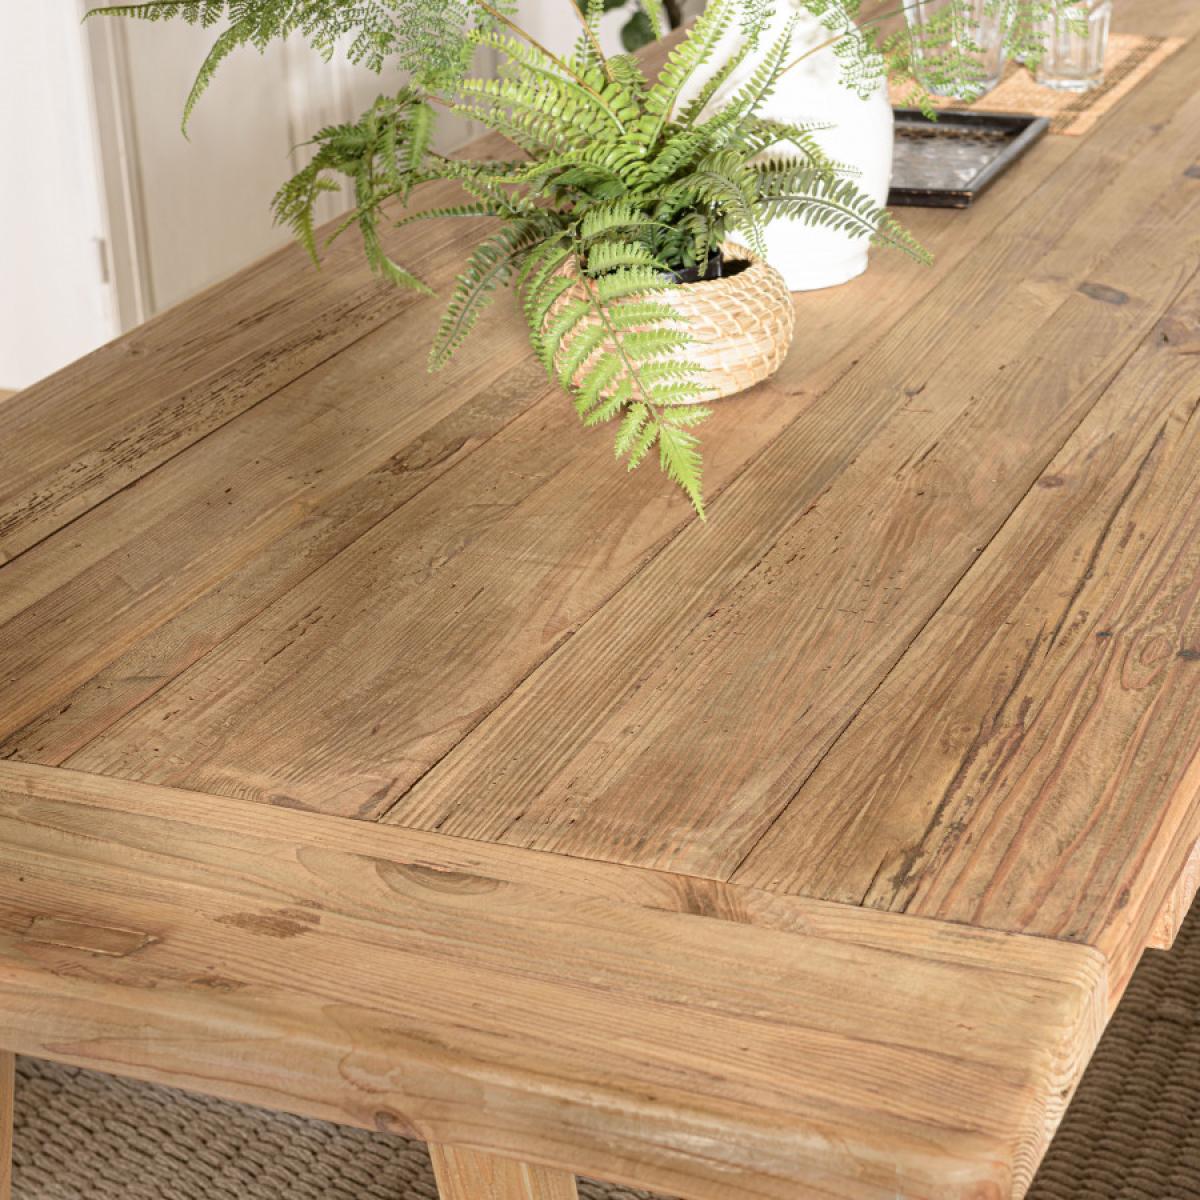 ANDRIAN - Table à manger rectangulaire 270x100cm bois Pin recyclé